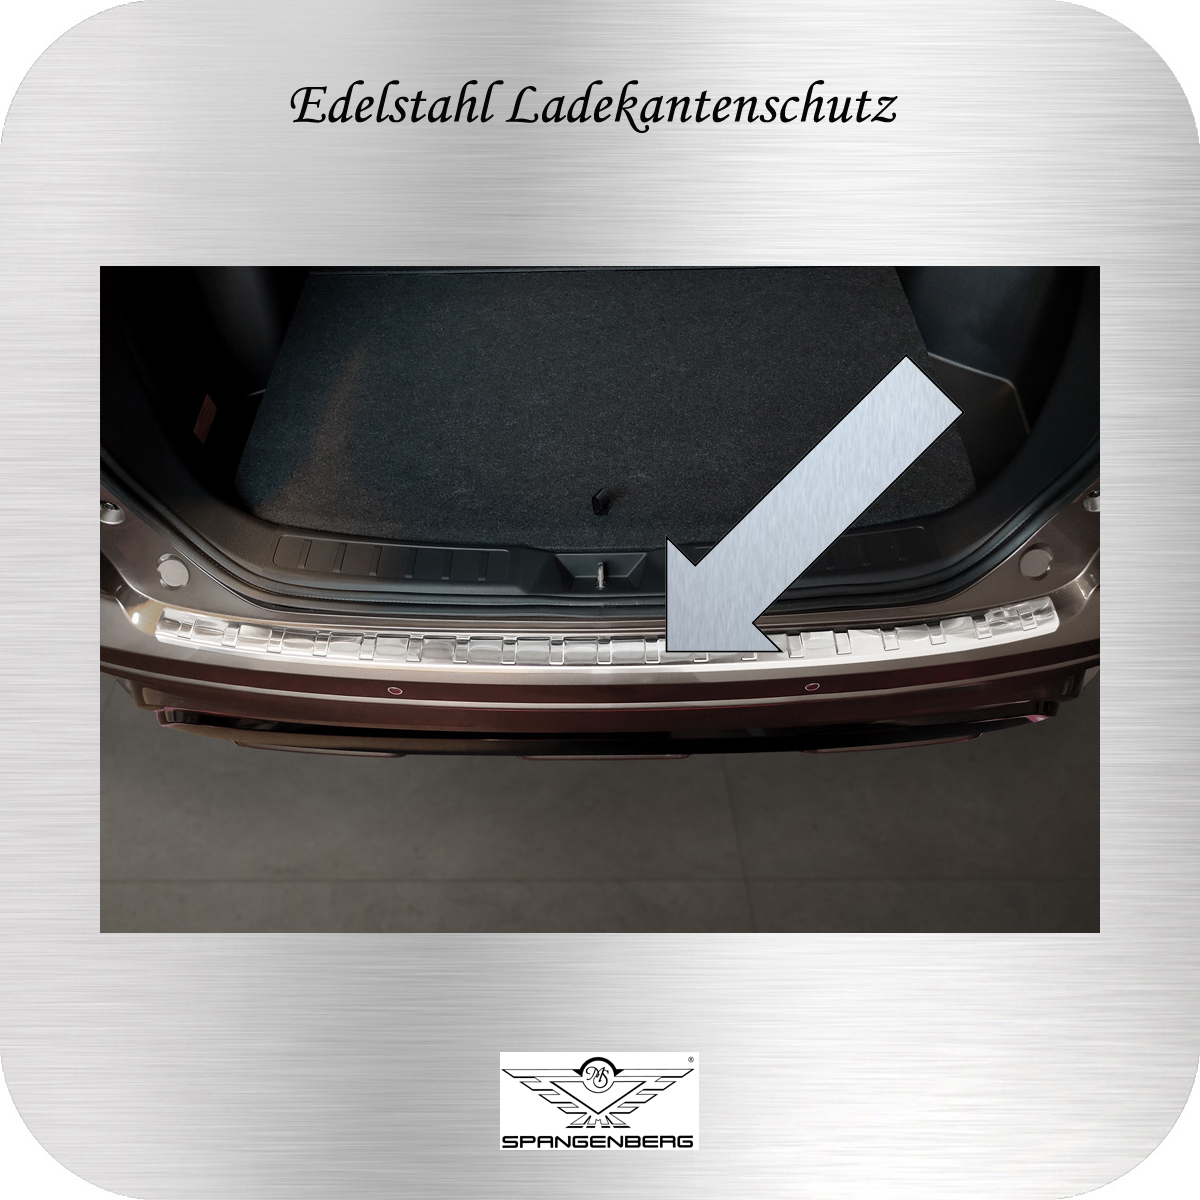 Ladekantenschutz Edelstahl für Mitsubishi Eclipse Cross Facelift 1.2021- 3235493